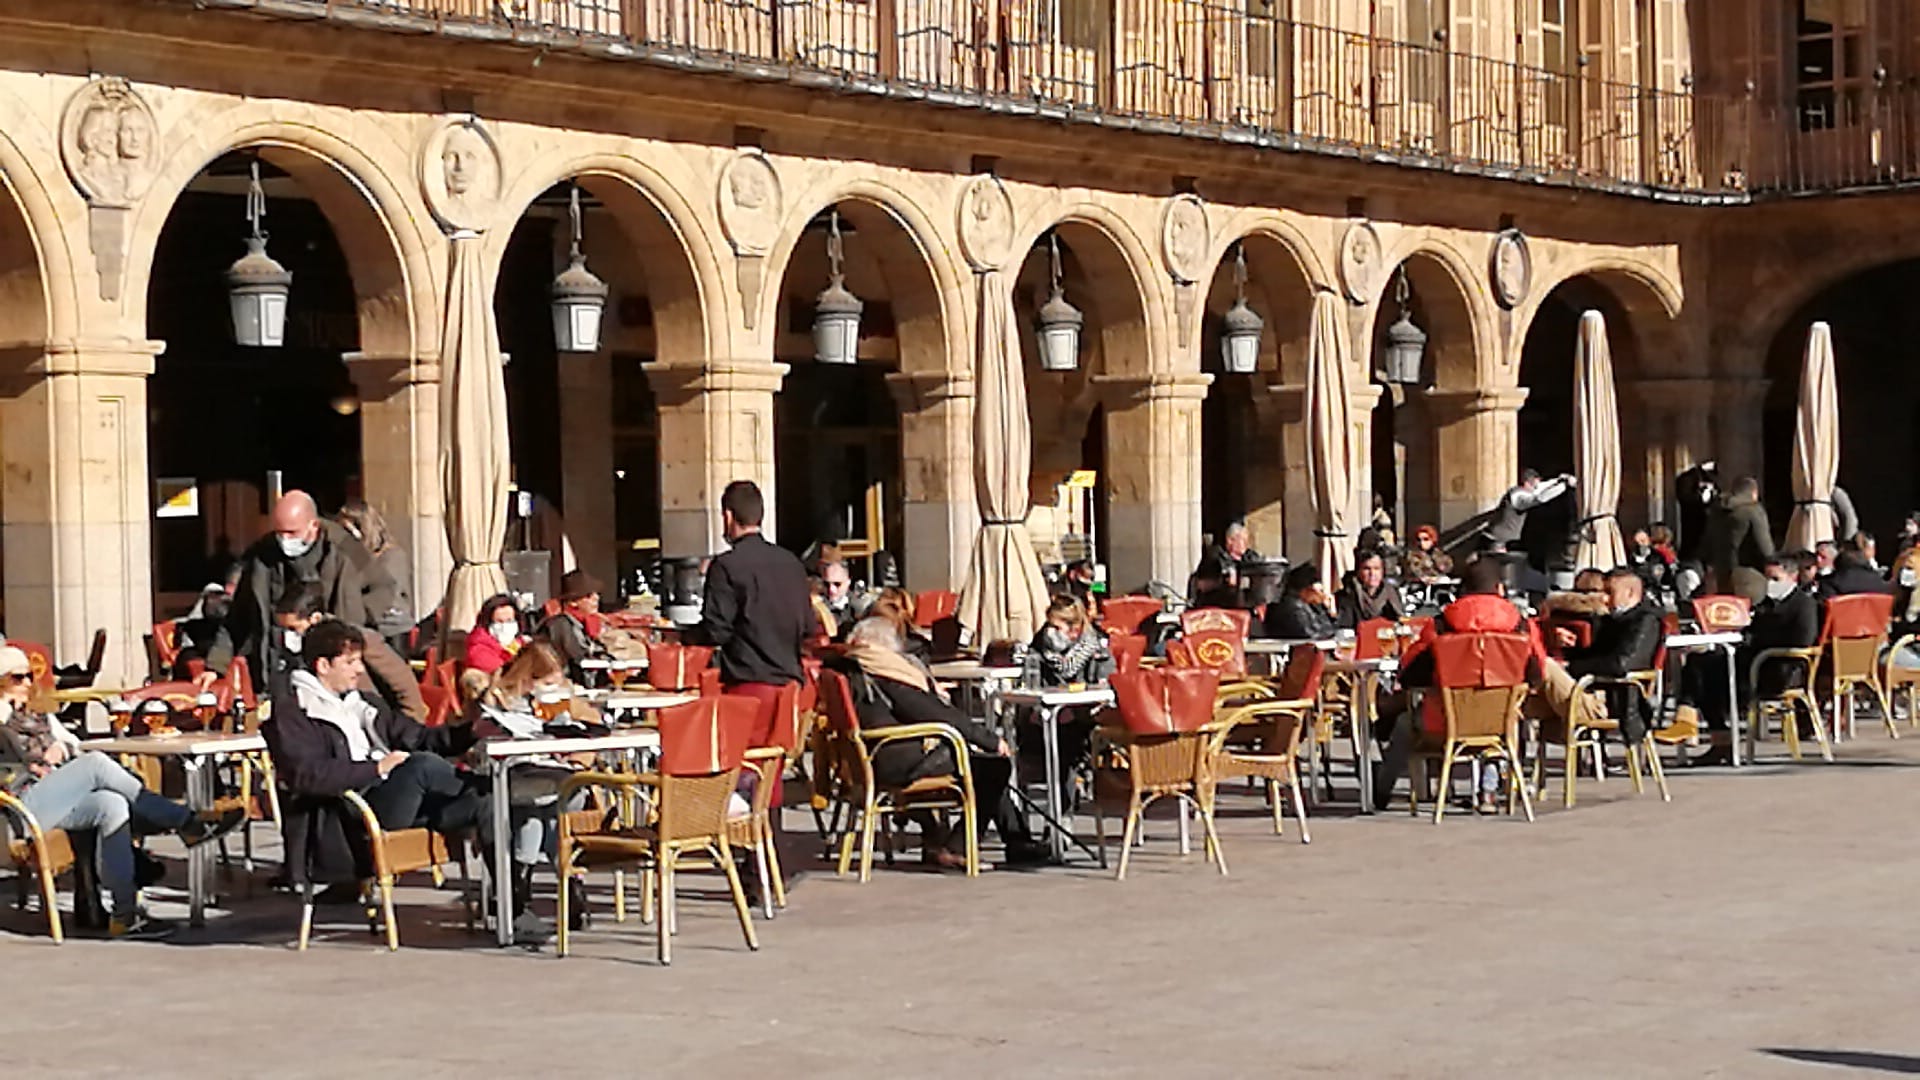 Las terrazas con sol de la Plaza Mayor estaban concurridas en las horas centrales del día.